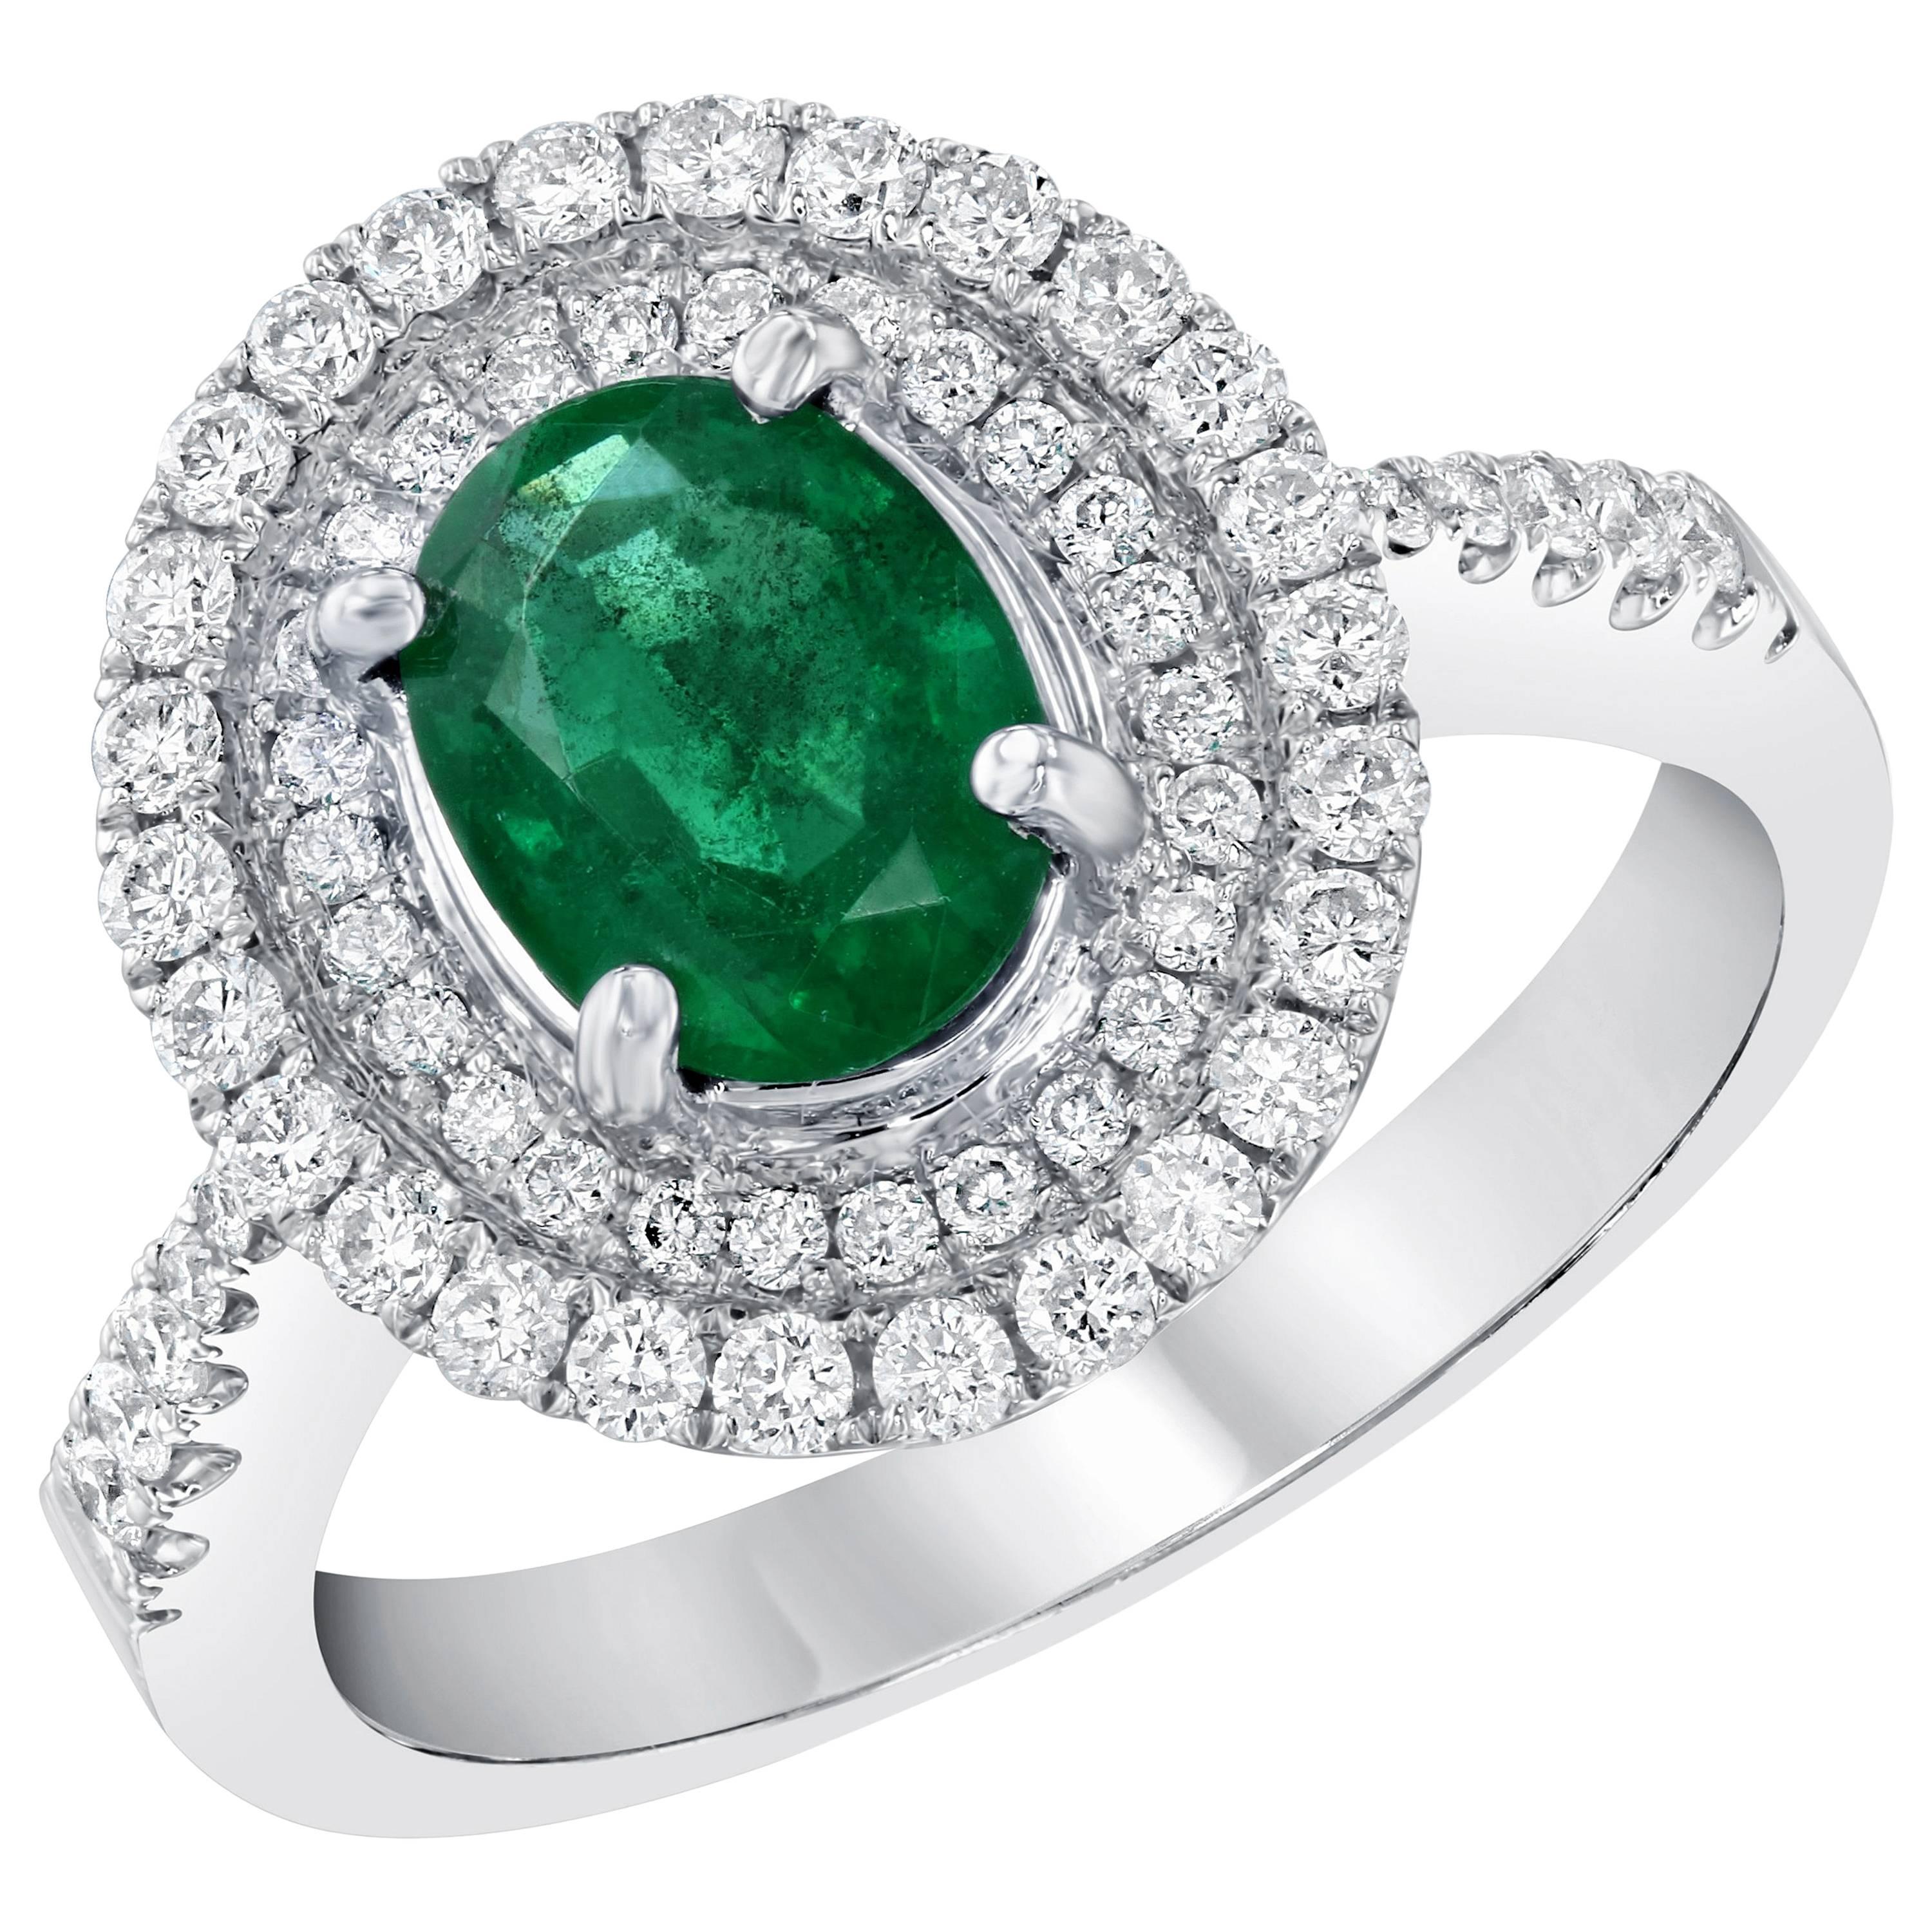 1.58 Carat Emerald and Diamond 18 Karat White Gold Engagement Ring